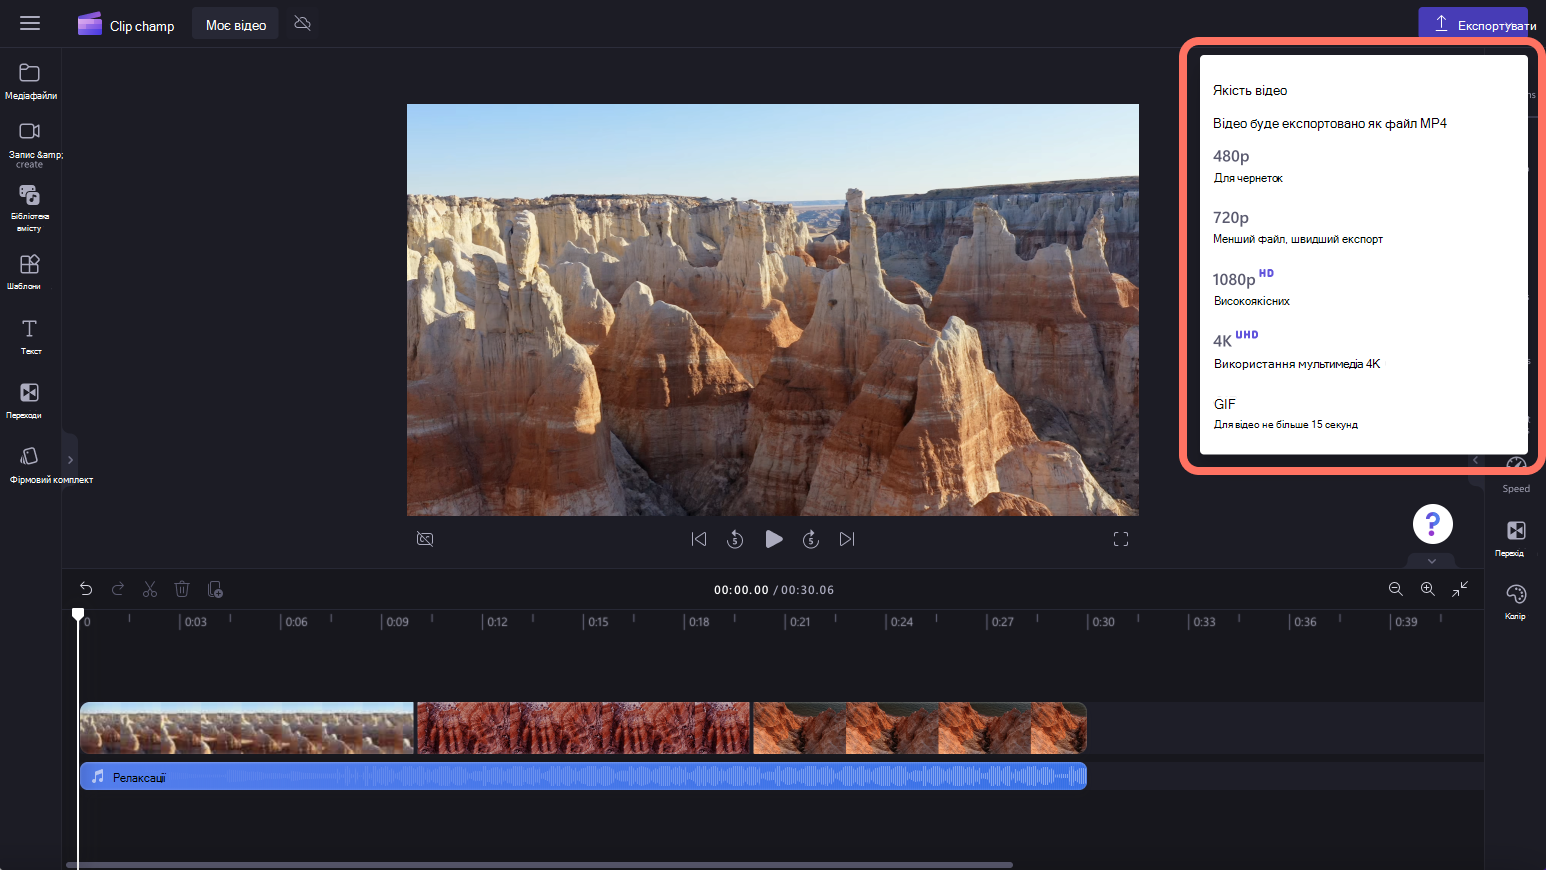 Зображення користувача, який вибирає роздільну здатність відео.